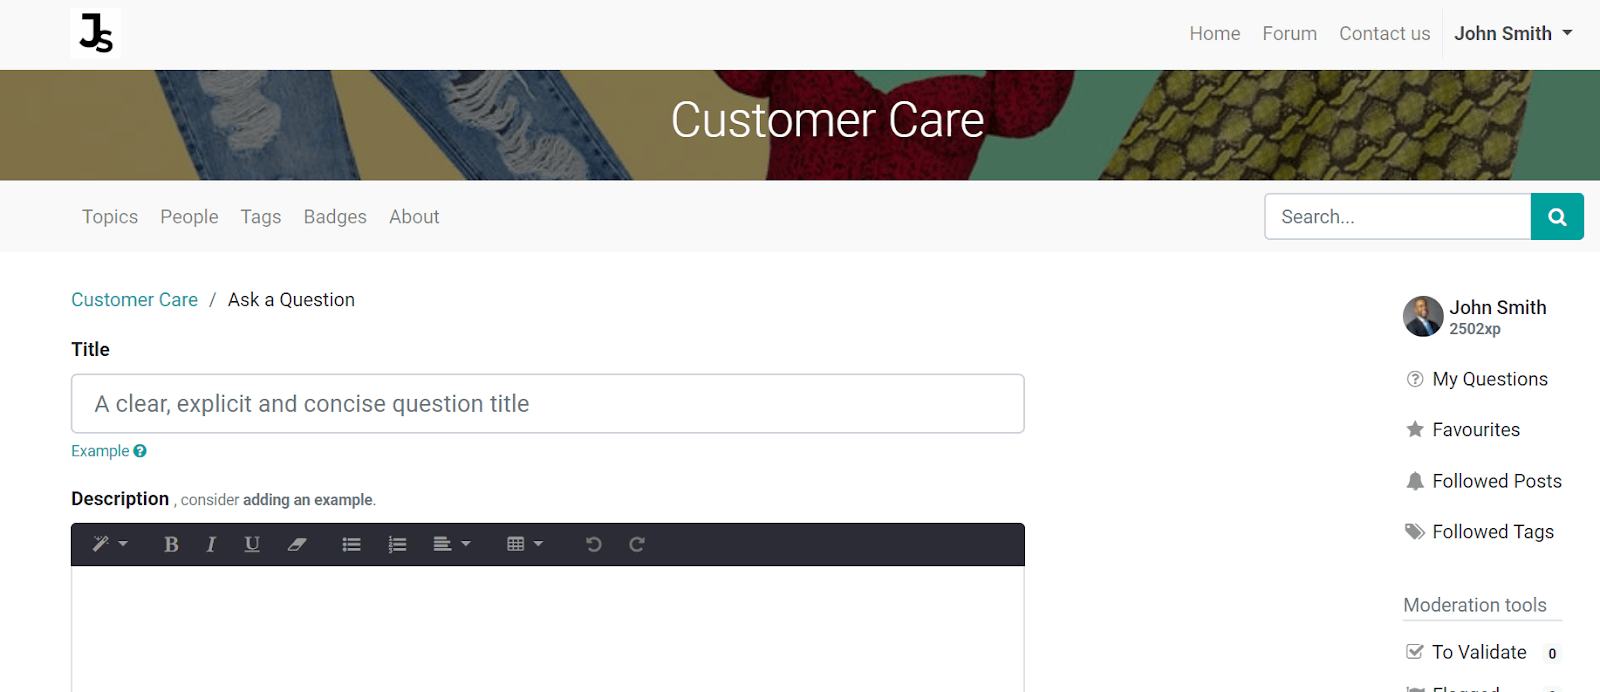 Vista general de la página de foros de un sitio web para mostrar los que están disponibles en el Servicio de asistencia de Odoo